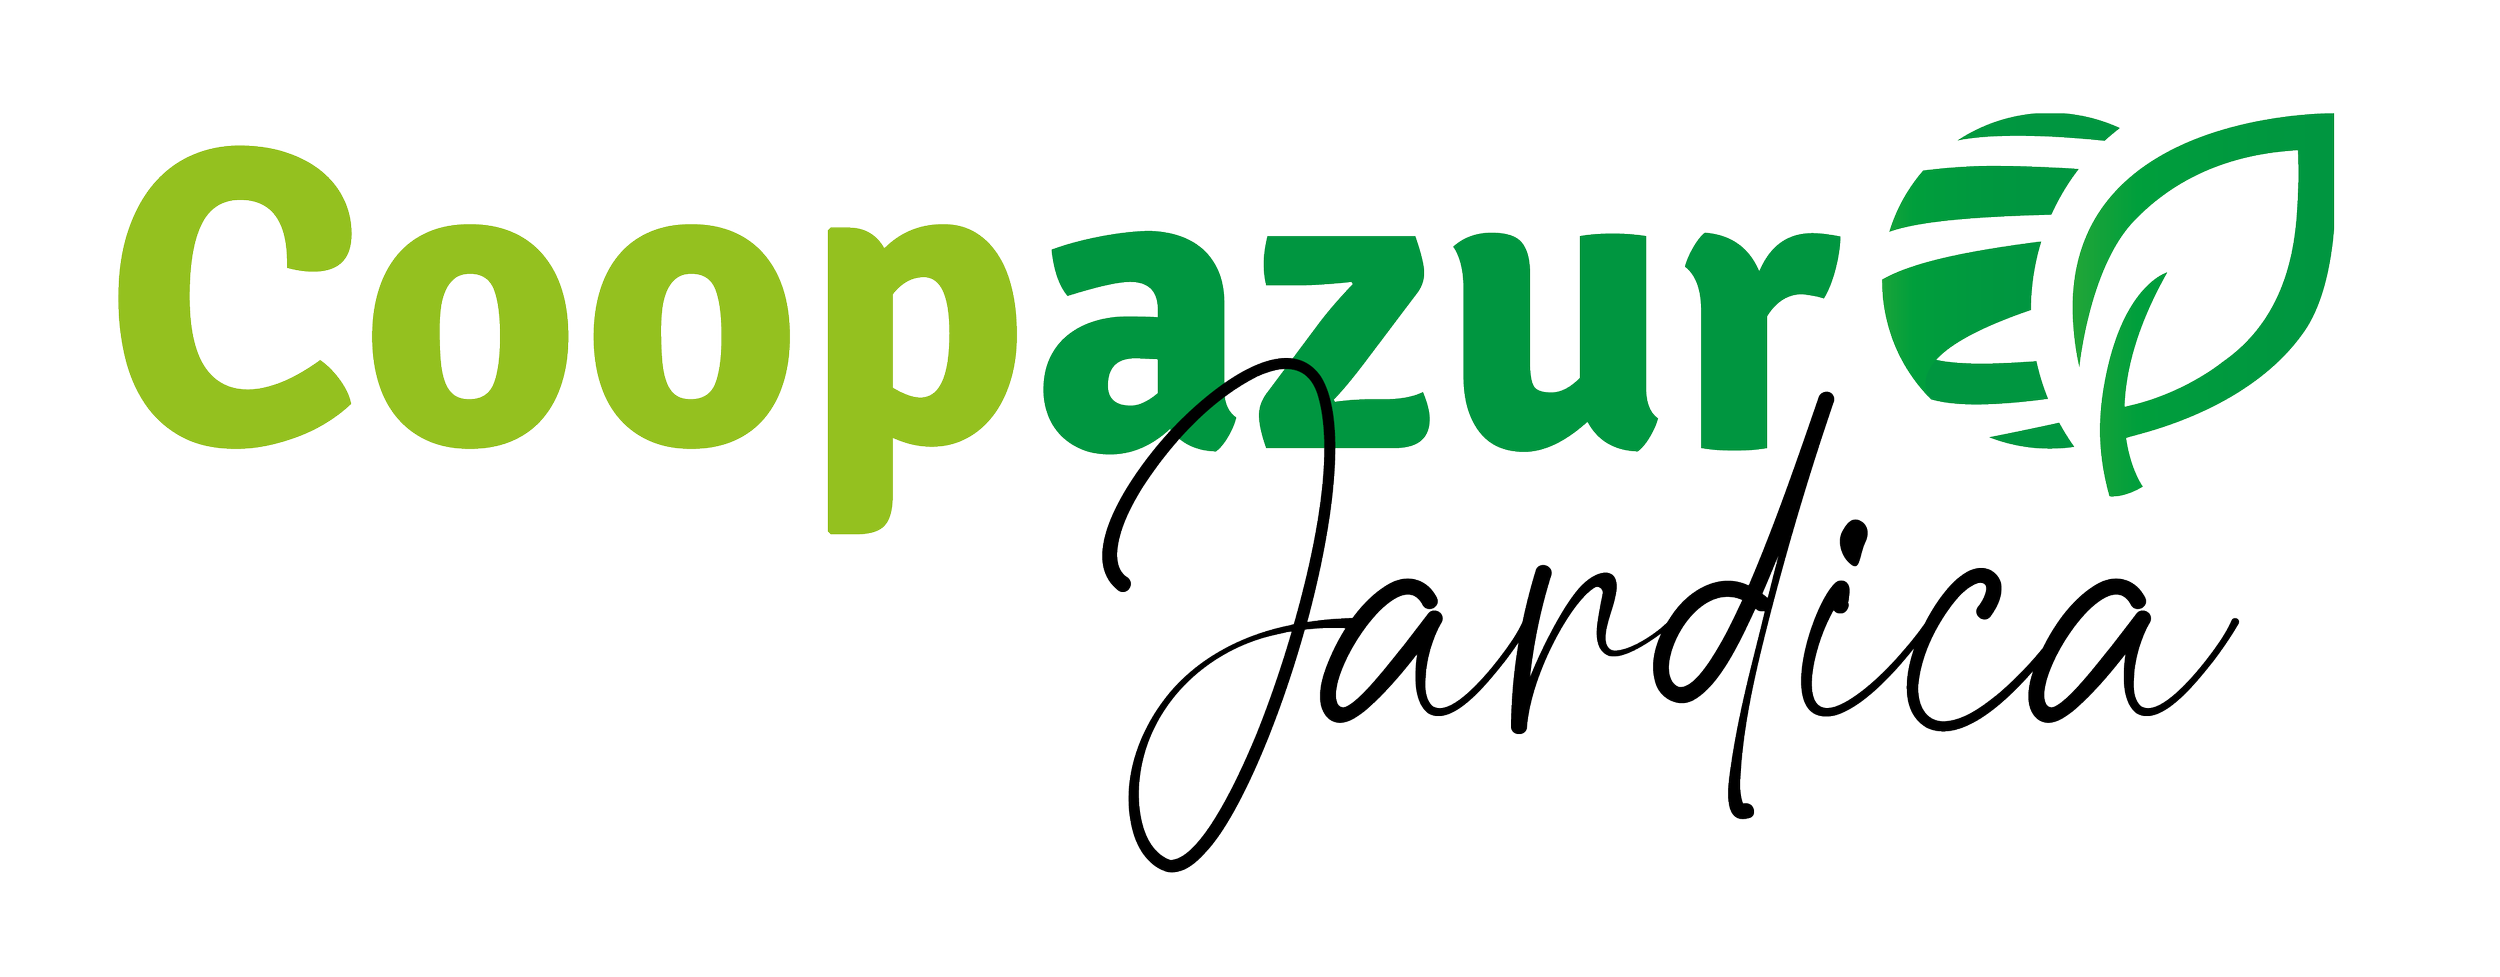 Coopazur Jardica logo.png